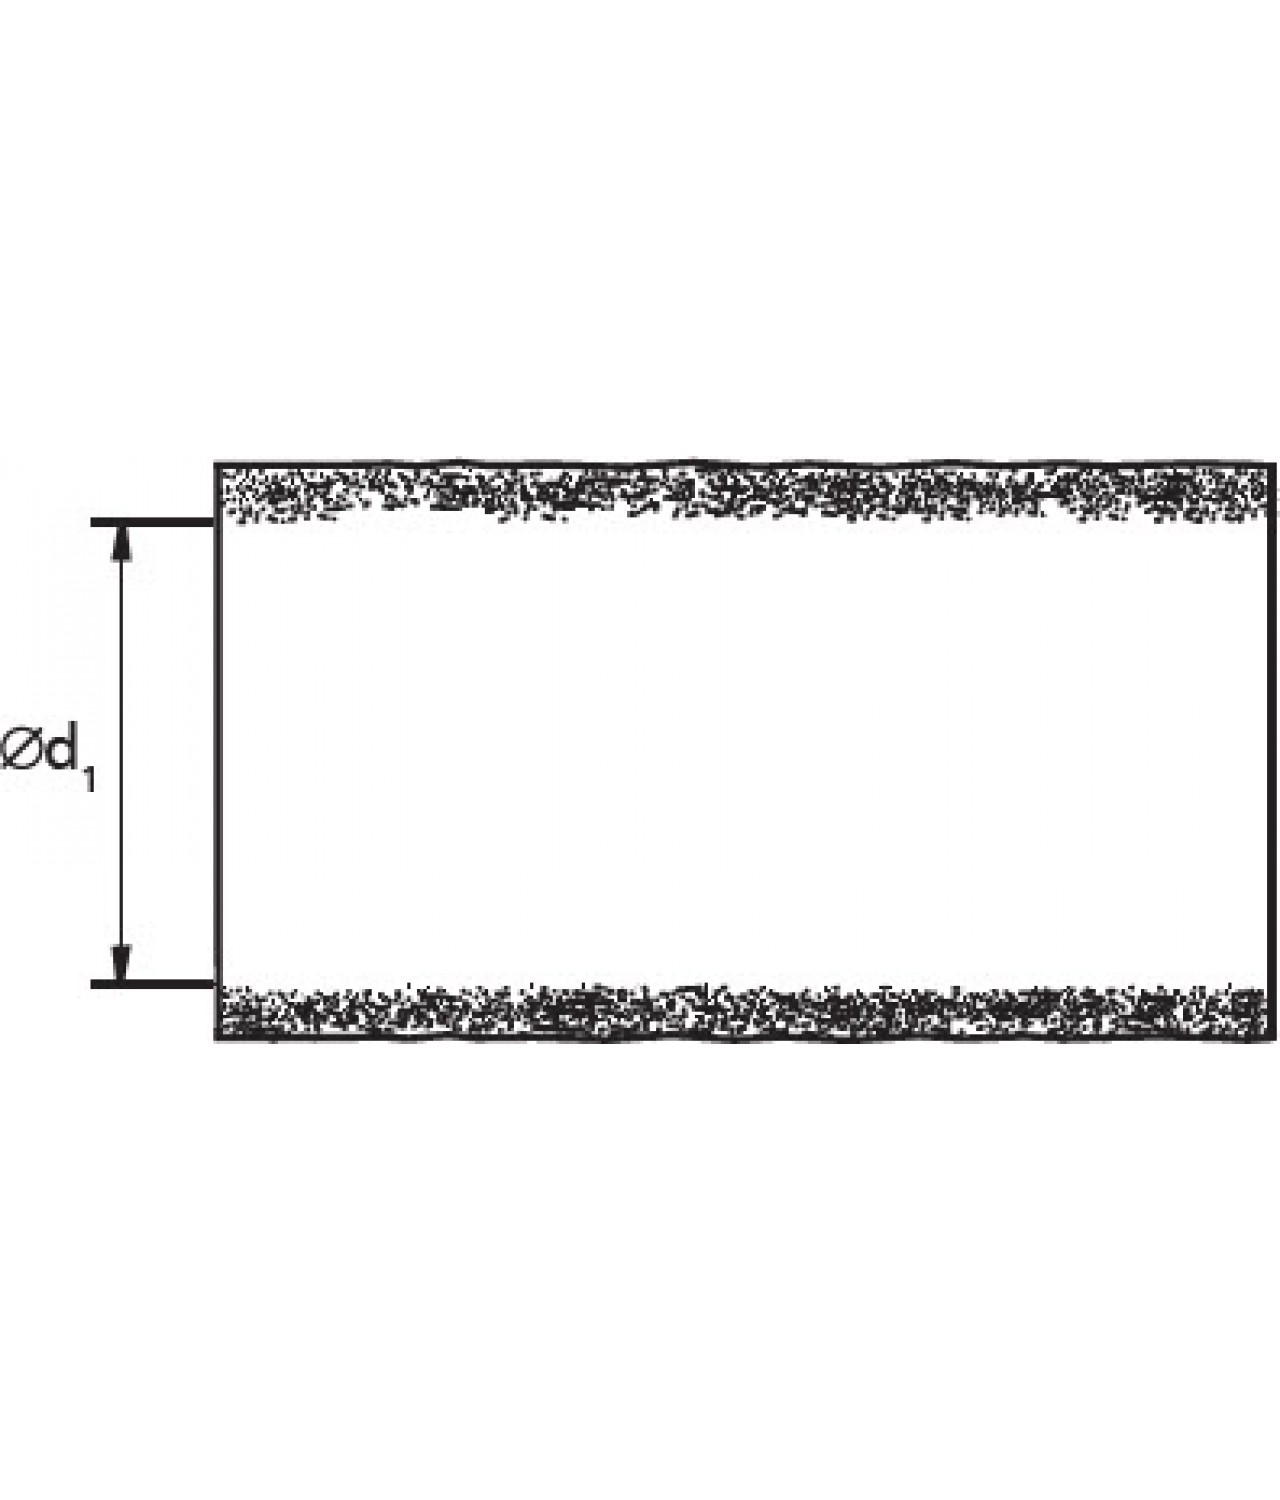 Ortakių antikondensacinė termoizoliacija ISO50/200/10, 50 mm Ø200 mm, L=10 m - brėžinys